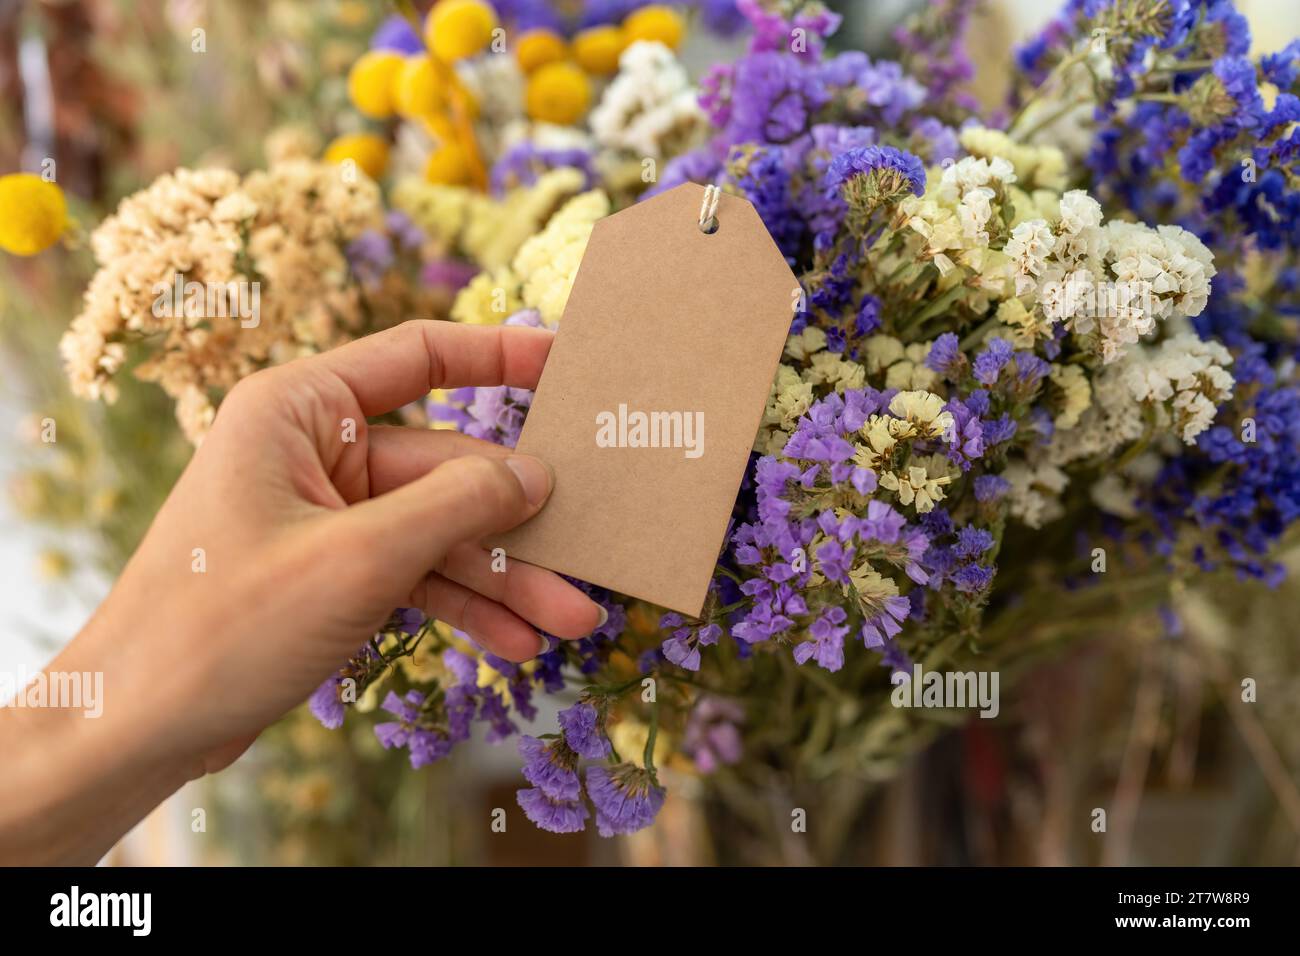 Halten Sie ein leeres braunes Etikett vor einem Strauß aus bunten getrockneten Blumen, mit Copyspace für Ihren individuellen Text. Stockfoto